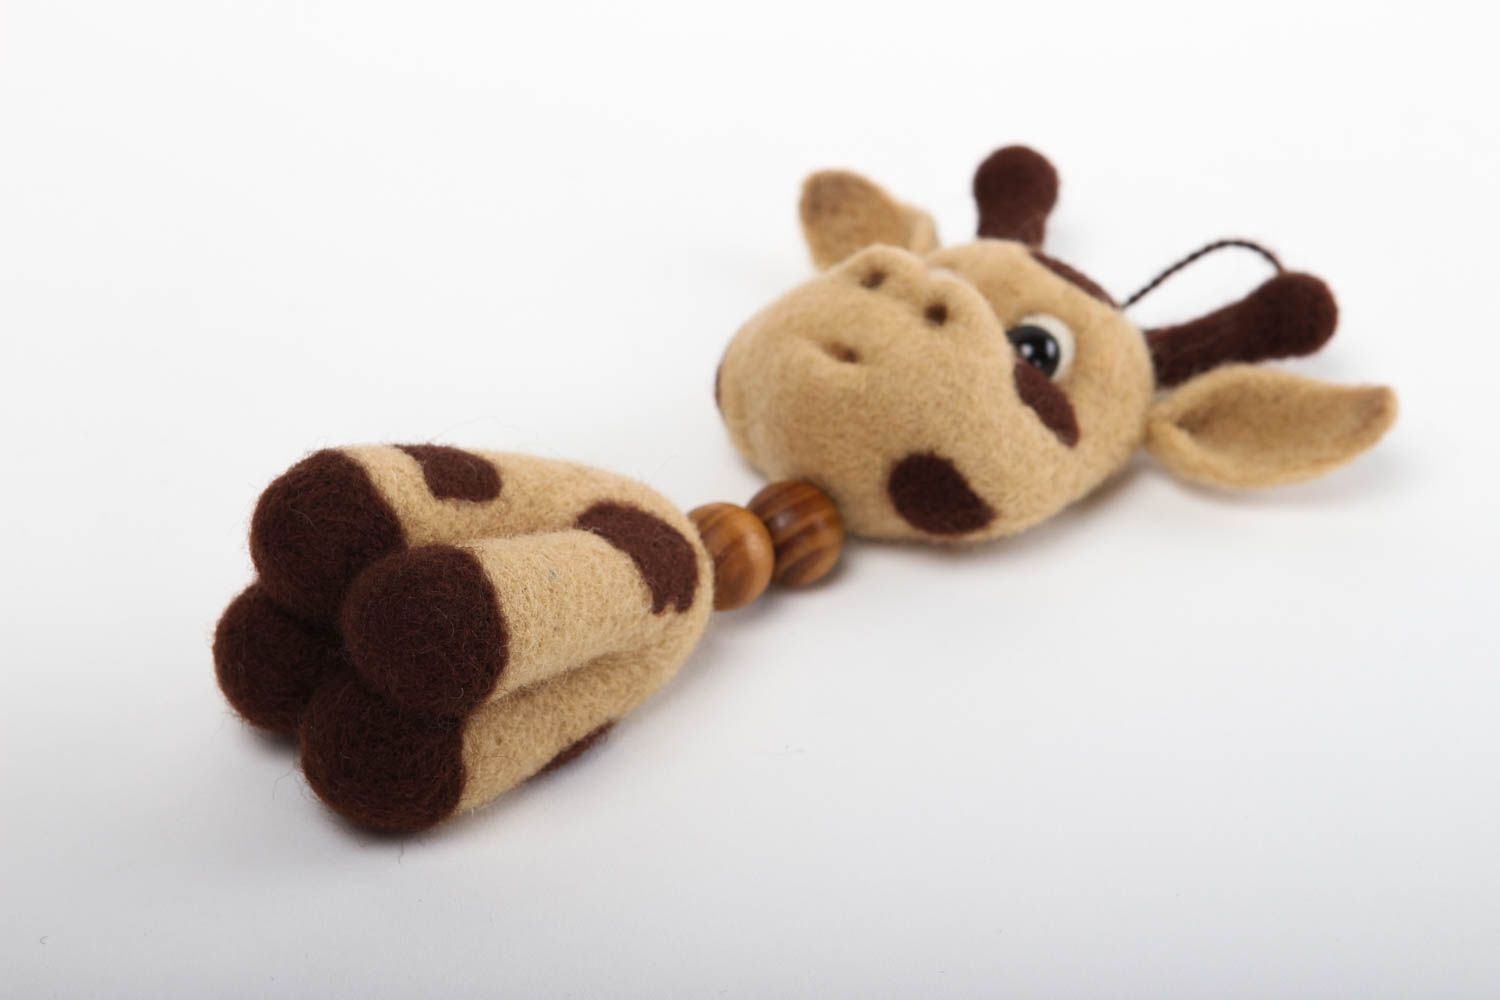 Handmade Tier gefilzt natürliches Spielzeug Geschenk Idee Giraffe für Kinder foto 4